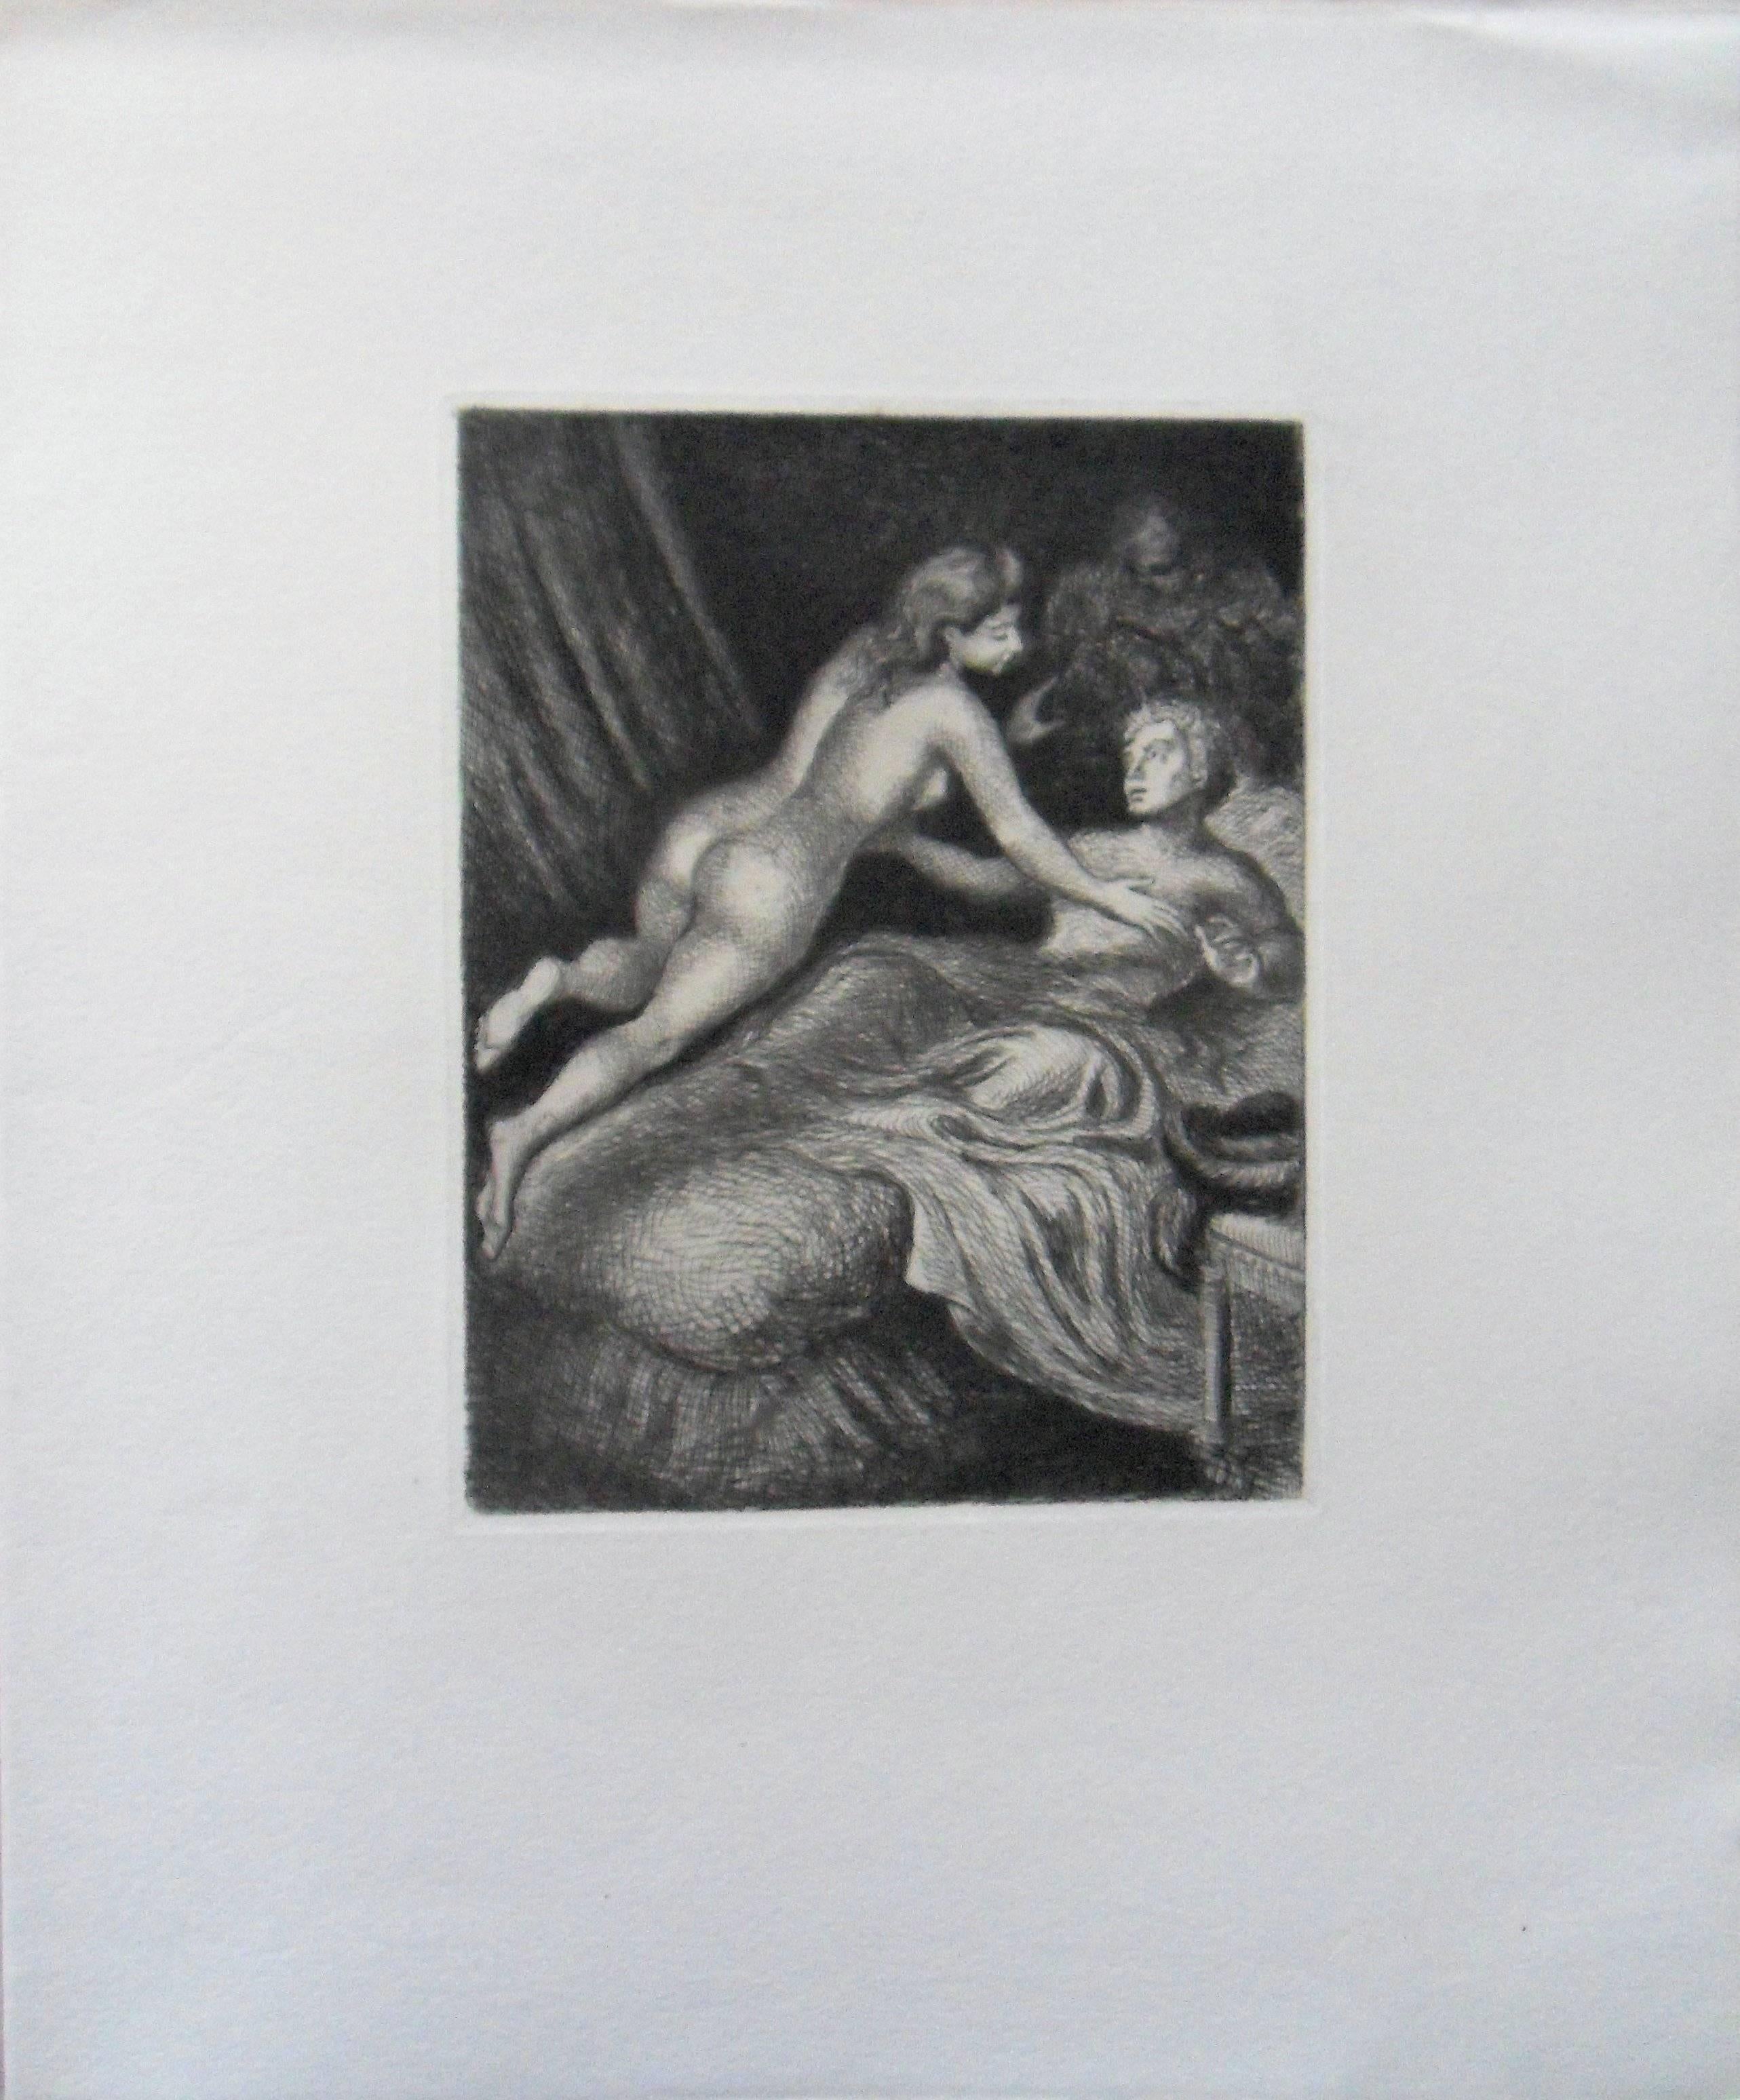 Lovers in Bed - Original etching, 1943 - Modern Print by Demetrios Galanis